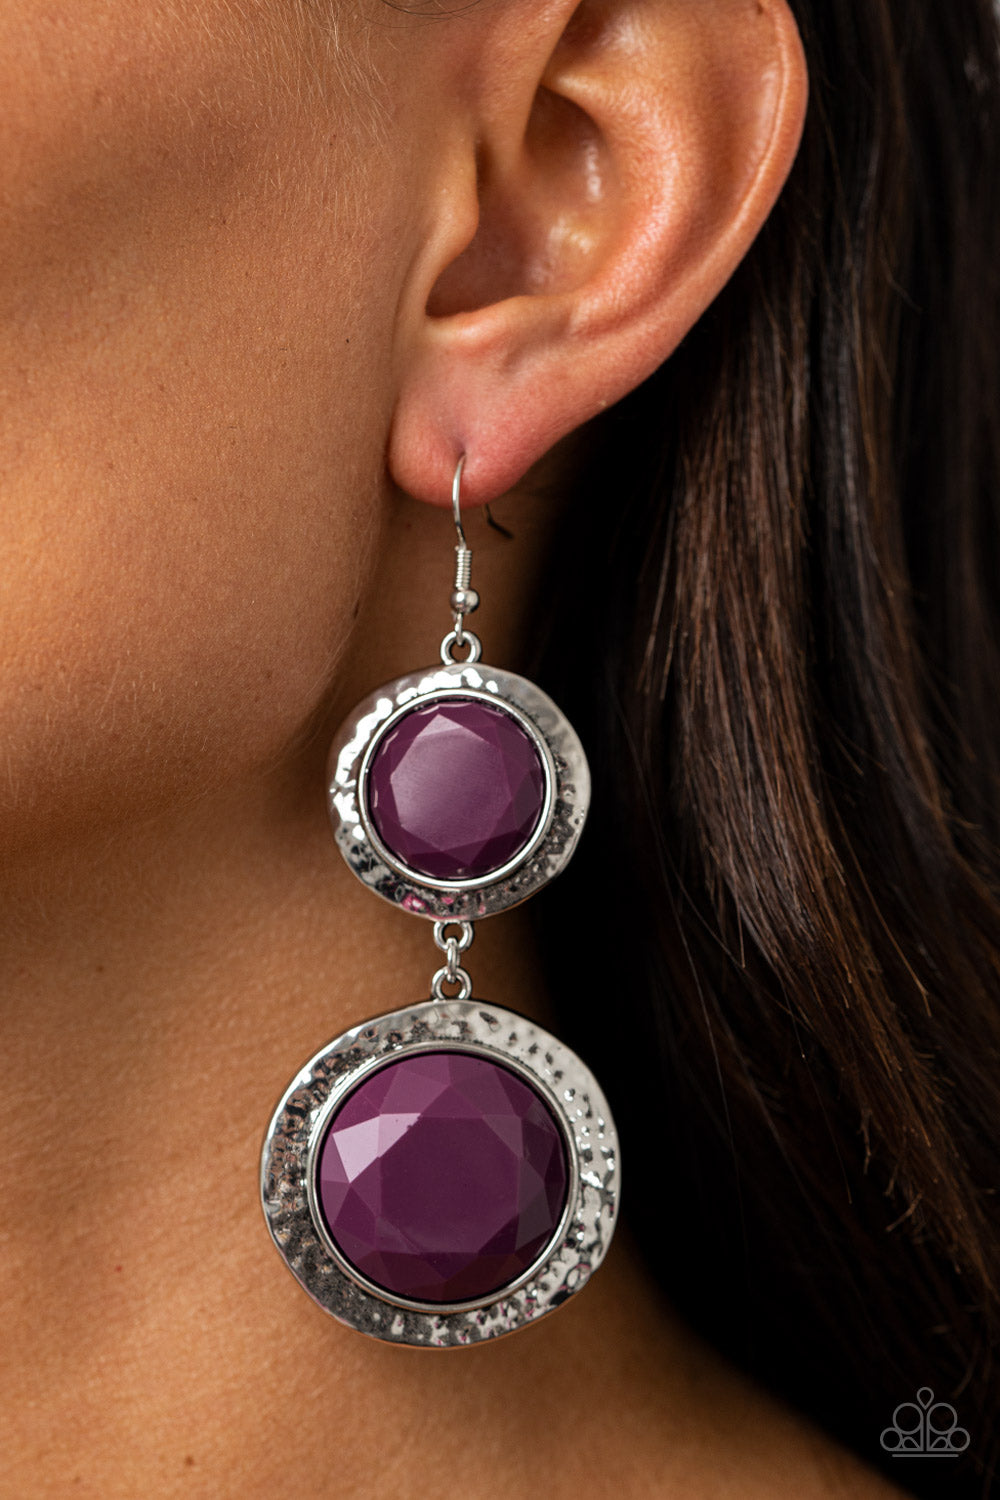 Thrift Shop Stop Earrings - Purple